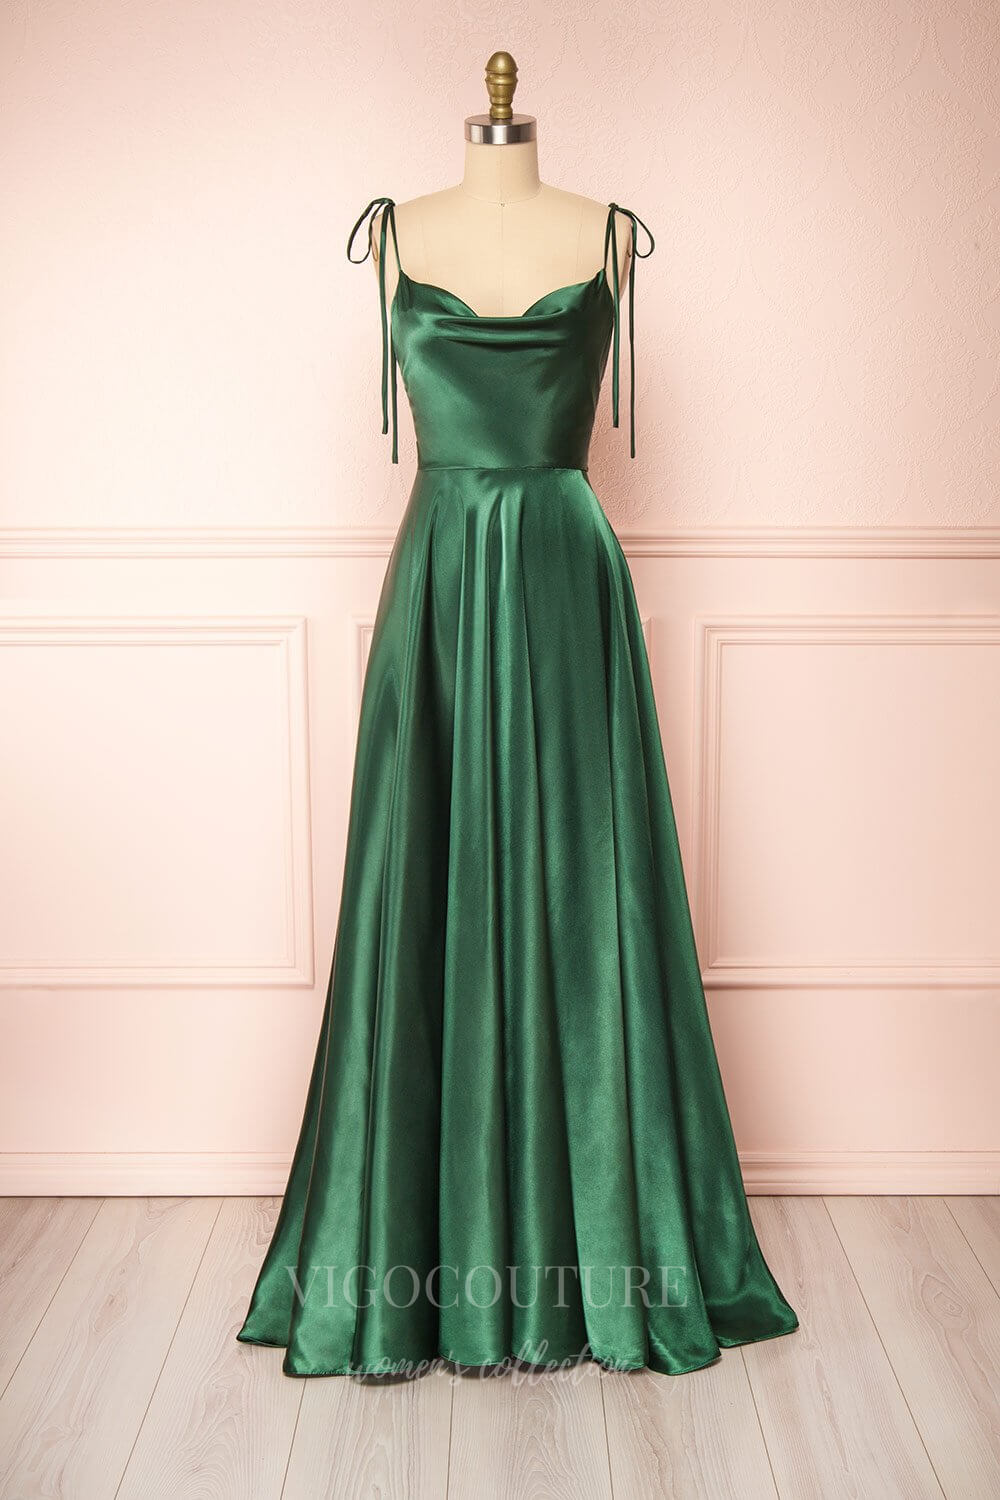 vigocouture-Dusty Pink Spaghetti Strap Prom Dress 20578-Prom Dresses-vigocouture-Green-US2-